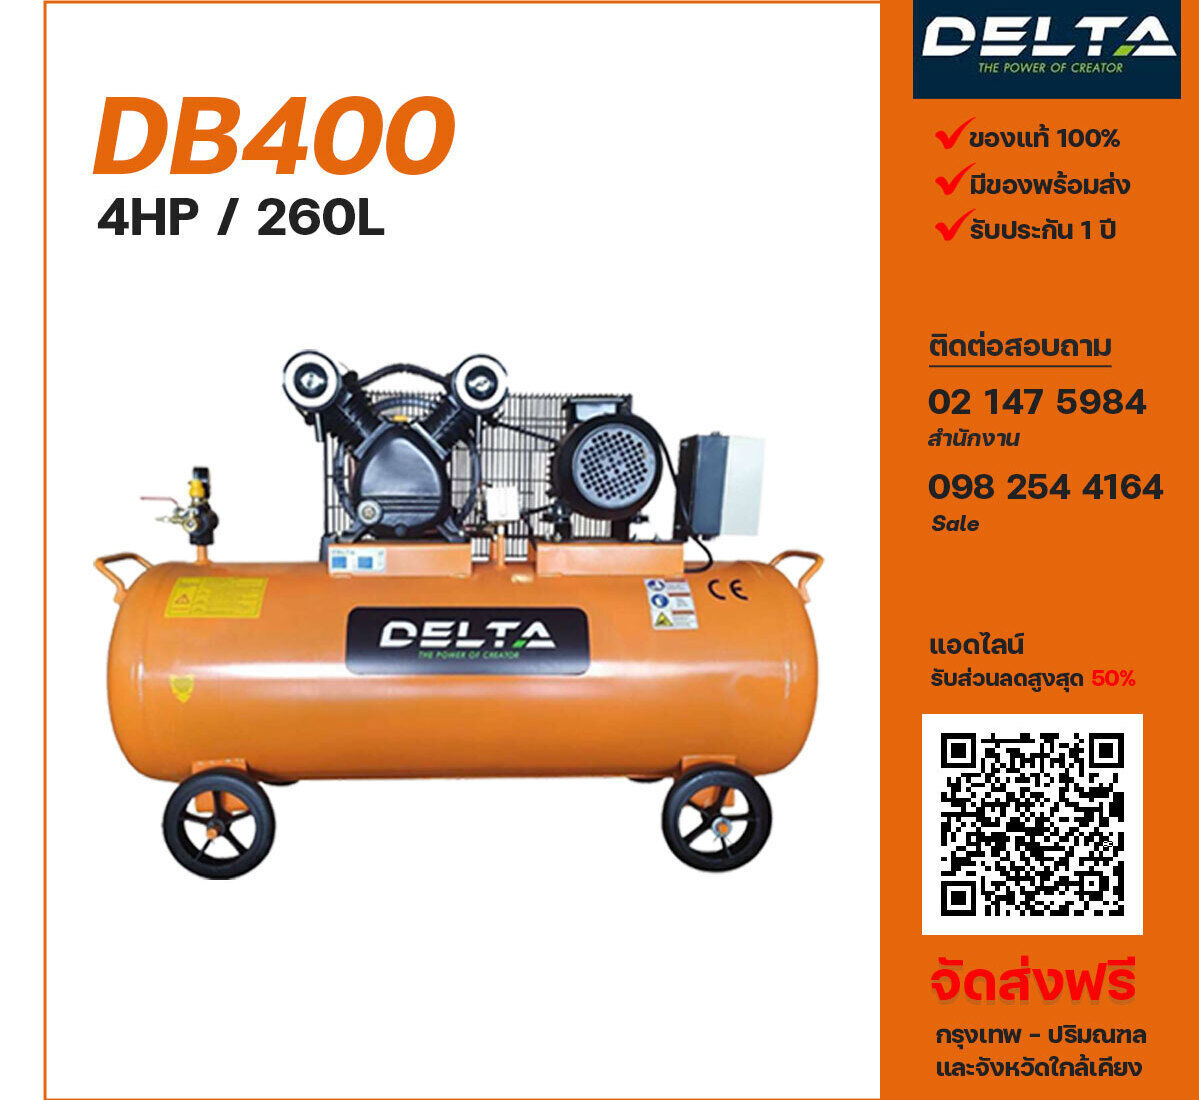 ปั๊มลมเดลต้า DELTA DB400 380V ปั๊มลมลูกสูบ ขนาด 2 สูบ 4 แรงม้า 260 ลิตร DELTA พร้อมมอเตอร์ ไฟ 380V ส่งฟรี กรุงเทพฯ-ปริมณฑล รับประกัน 1 ปี